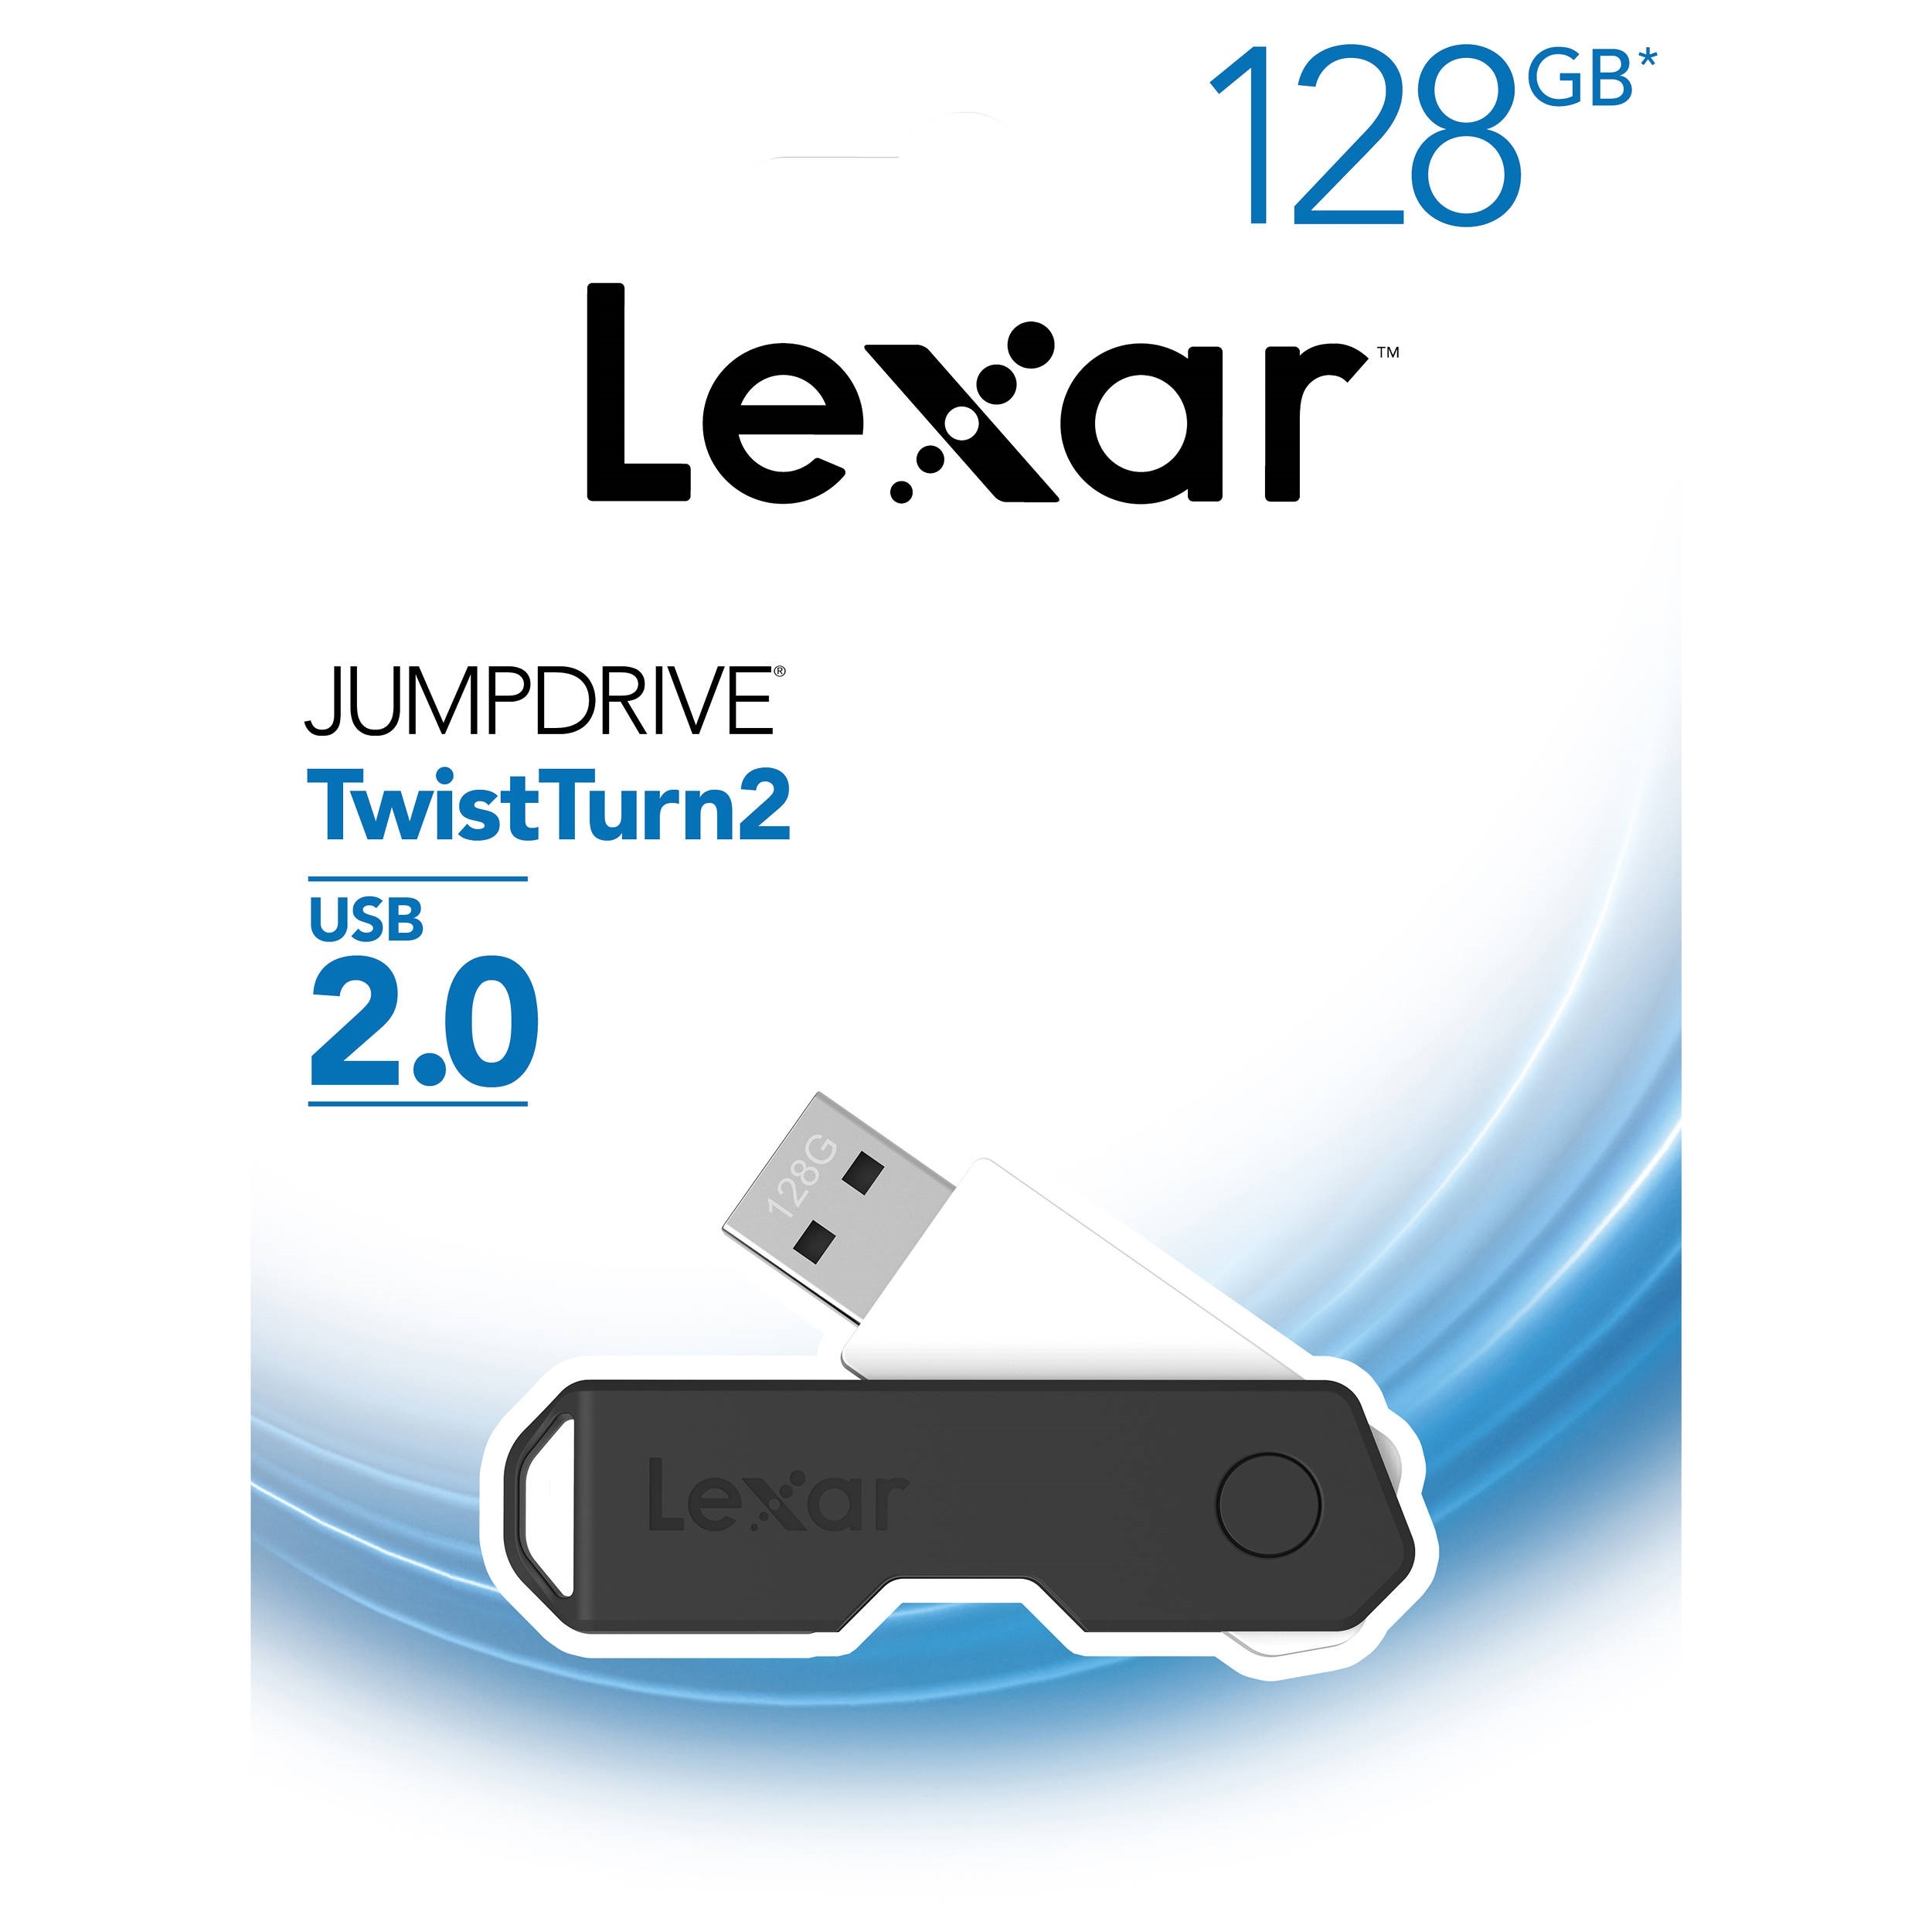 Lexar 128GB JumpDrive TwistTurn2 USB Flash Drive (Black)